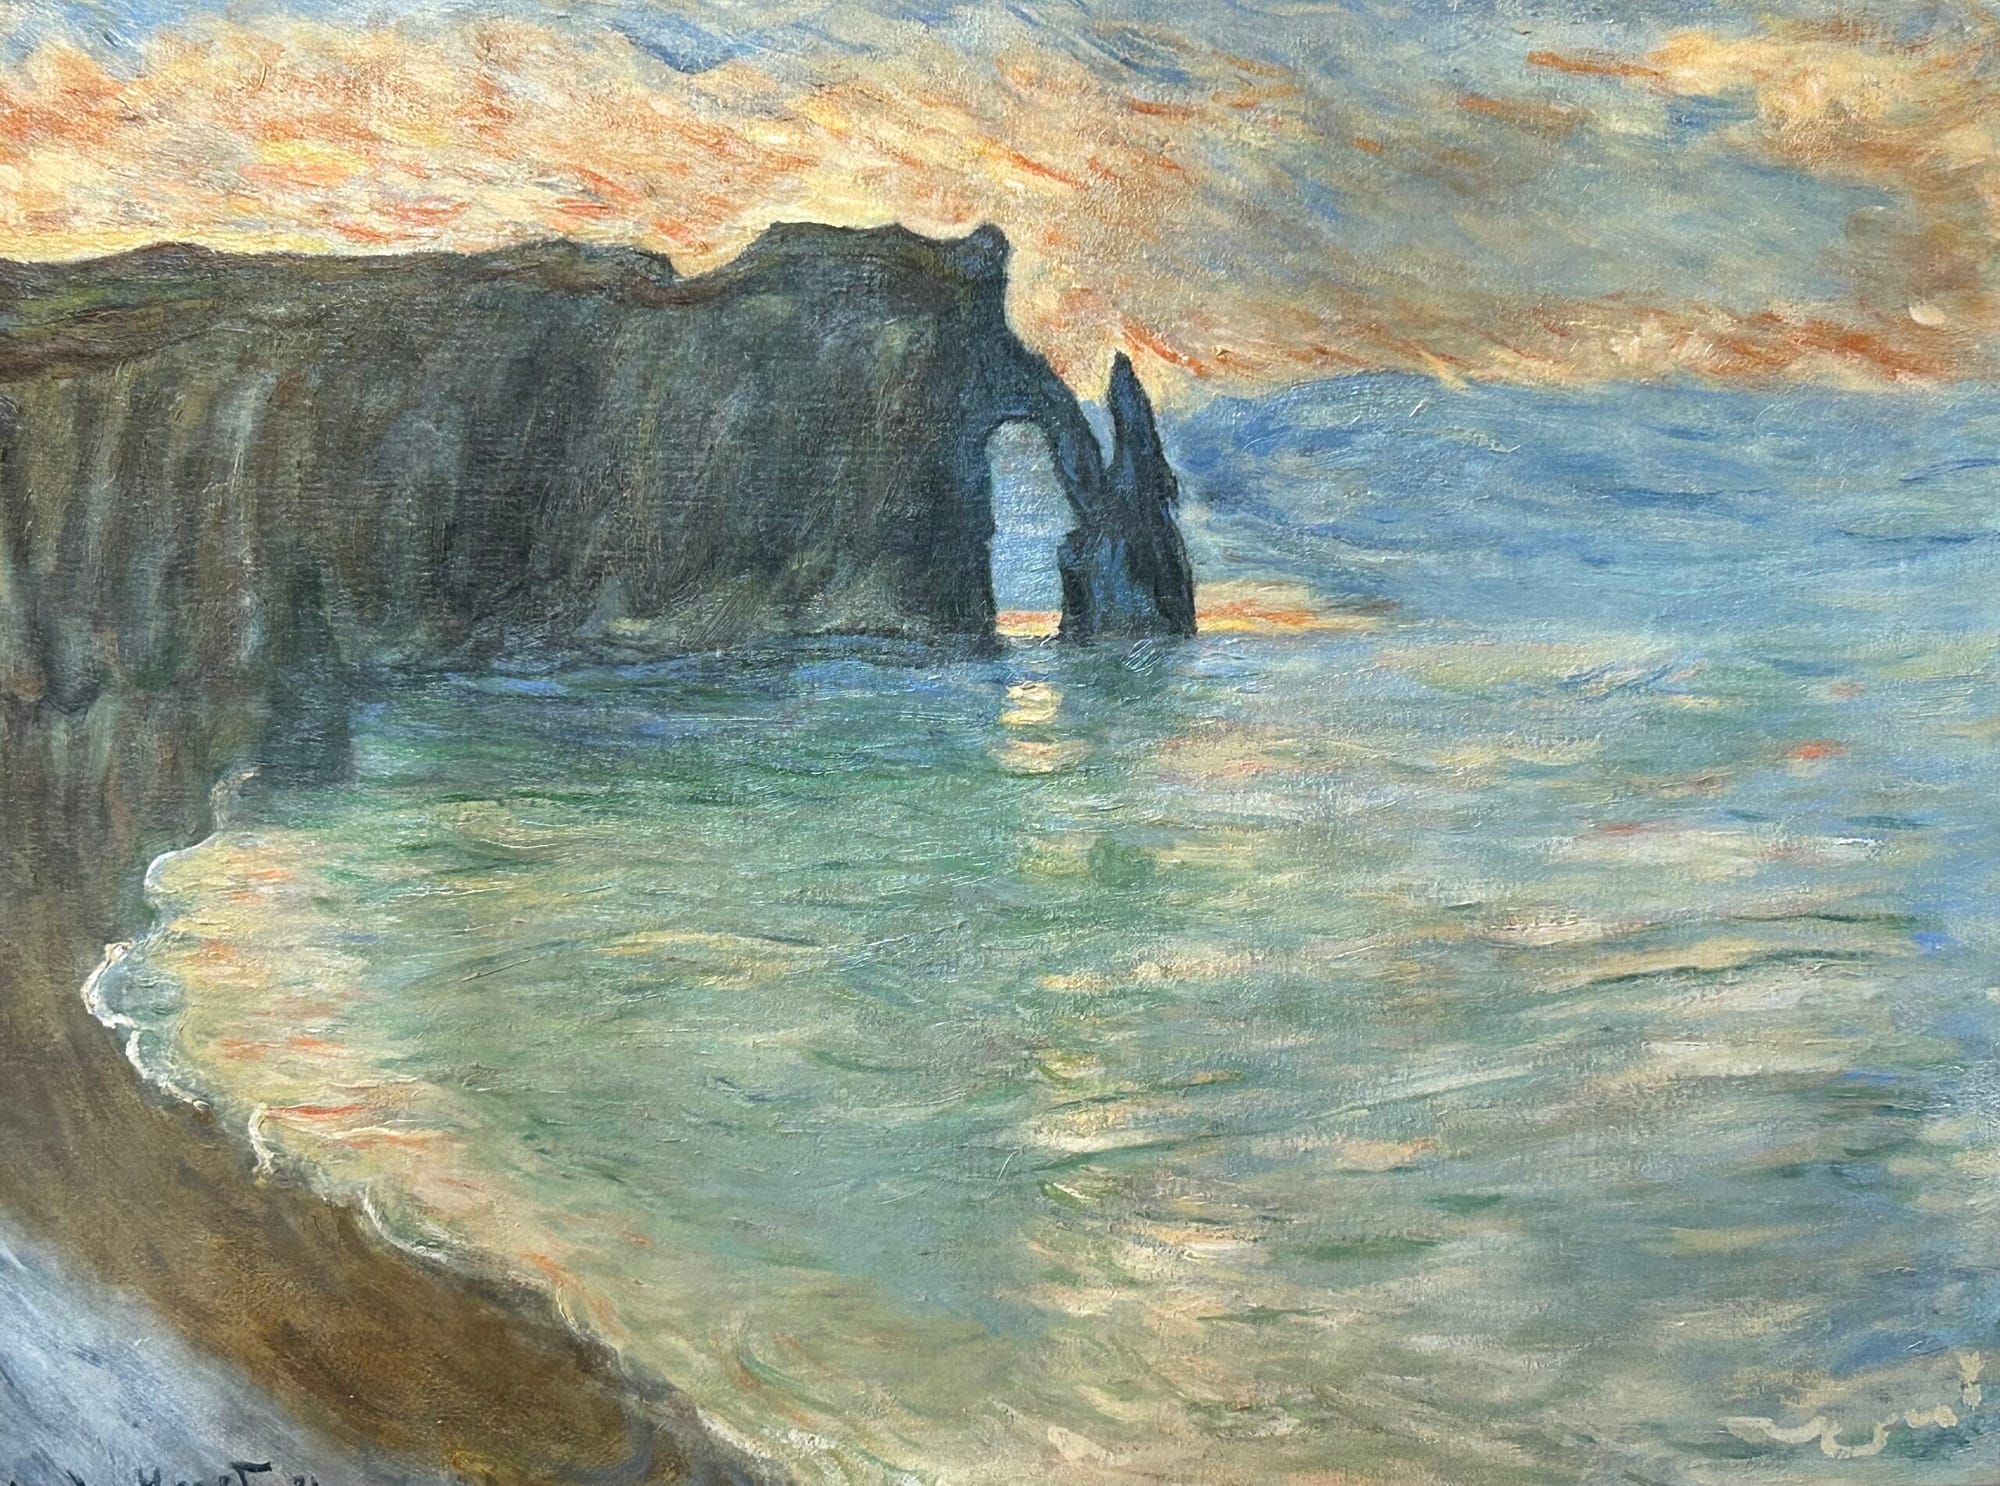 Étretat by Claude Monet